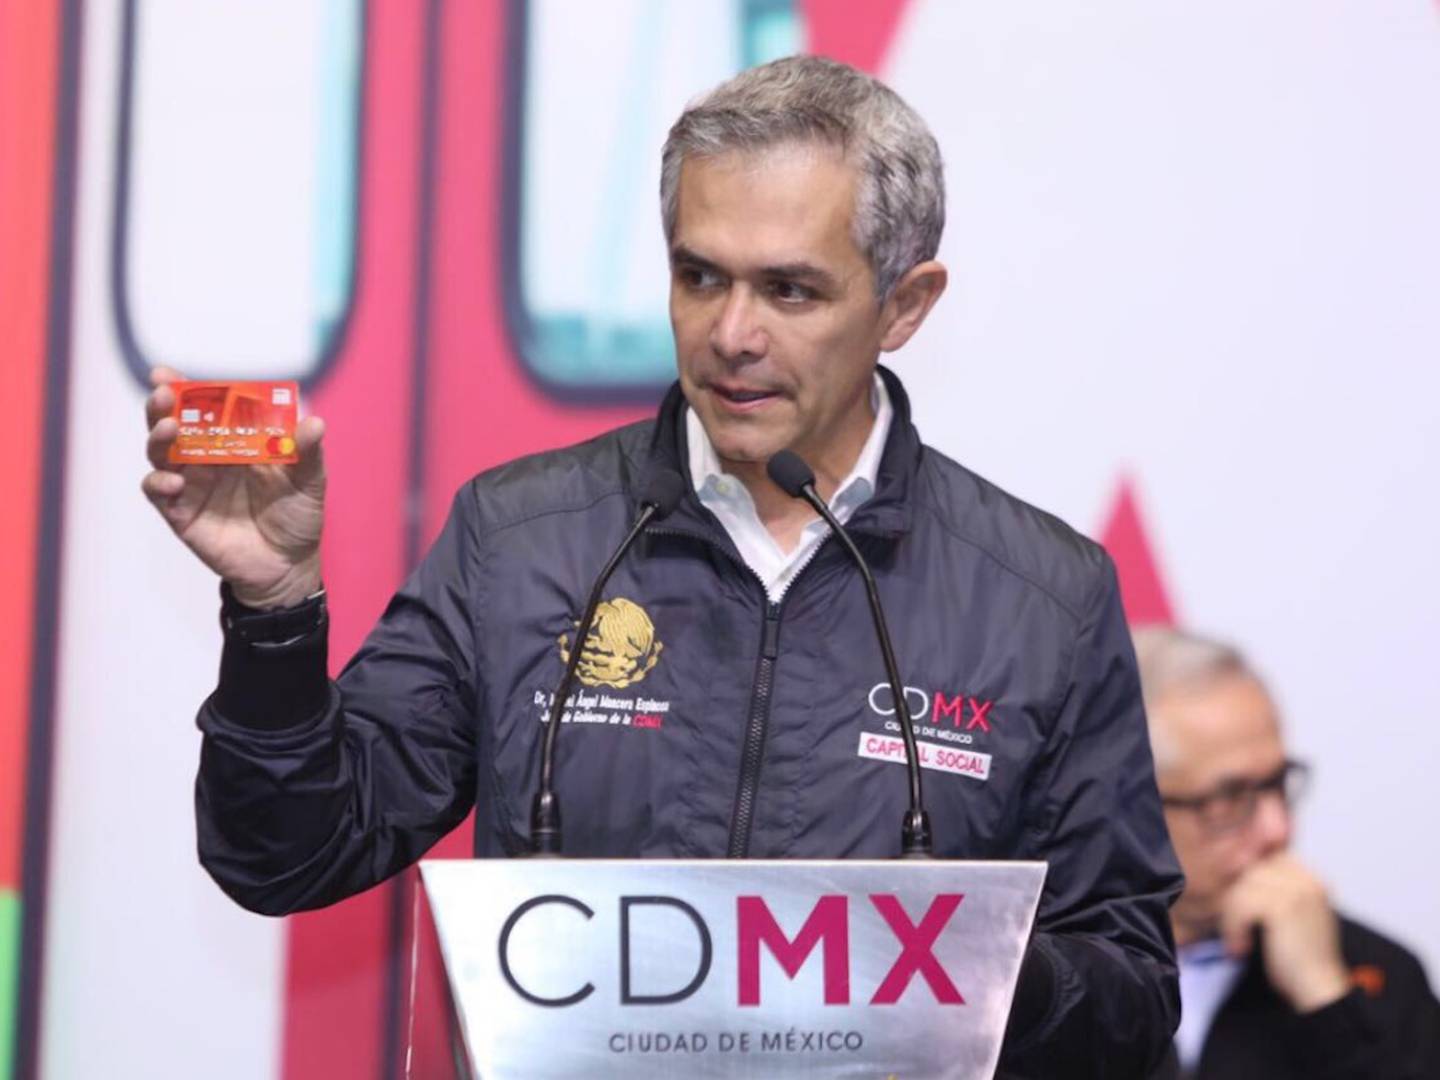 Cómo funciona la nueva tarjeta de debito mastercard del Metro en la CDMX?